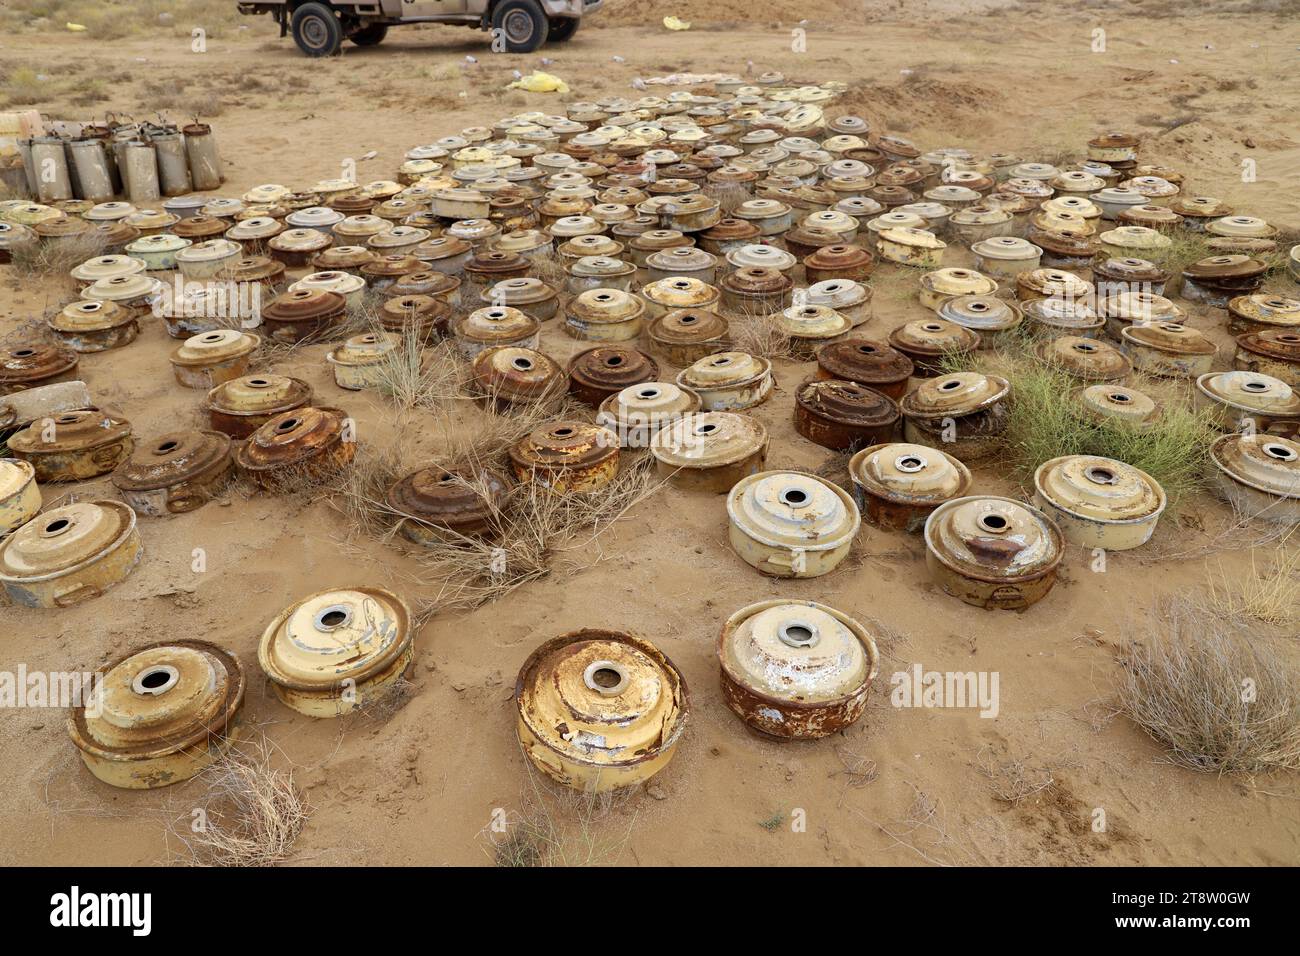 HAJJAH, JEMEN – 27. Januar 2021: Zerstörung von mehr als fünftausend Minen und Sprengkörperresten im Gouvernement Hajjah auf der Stockfoto